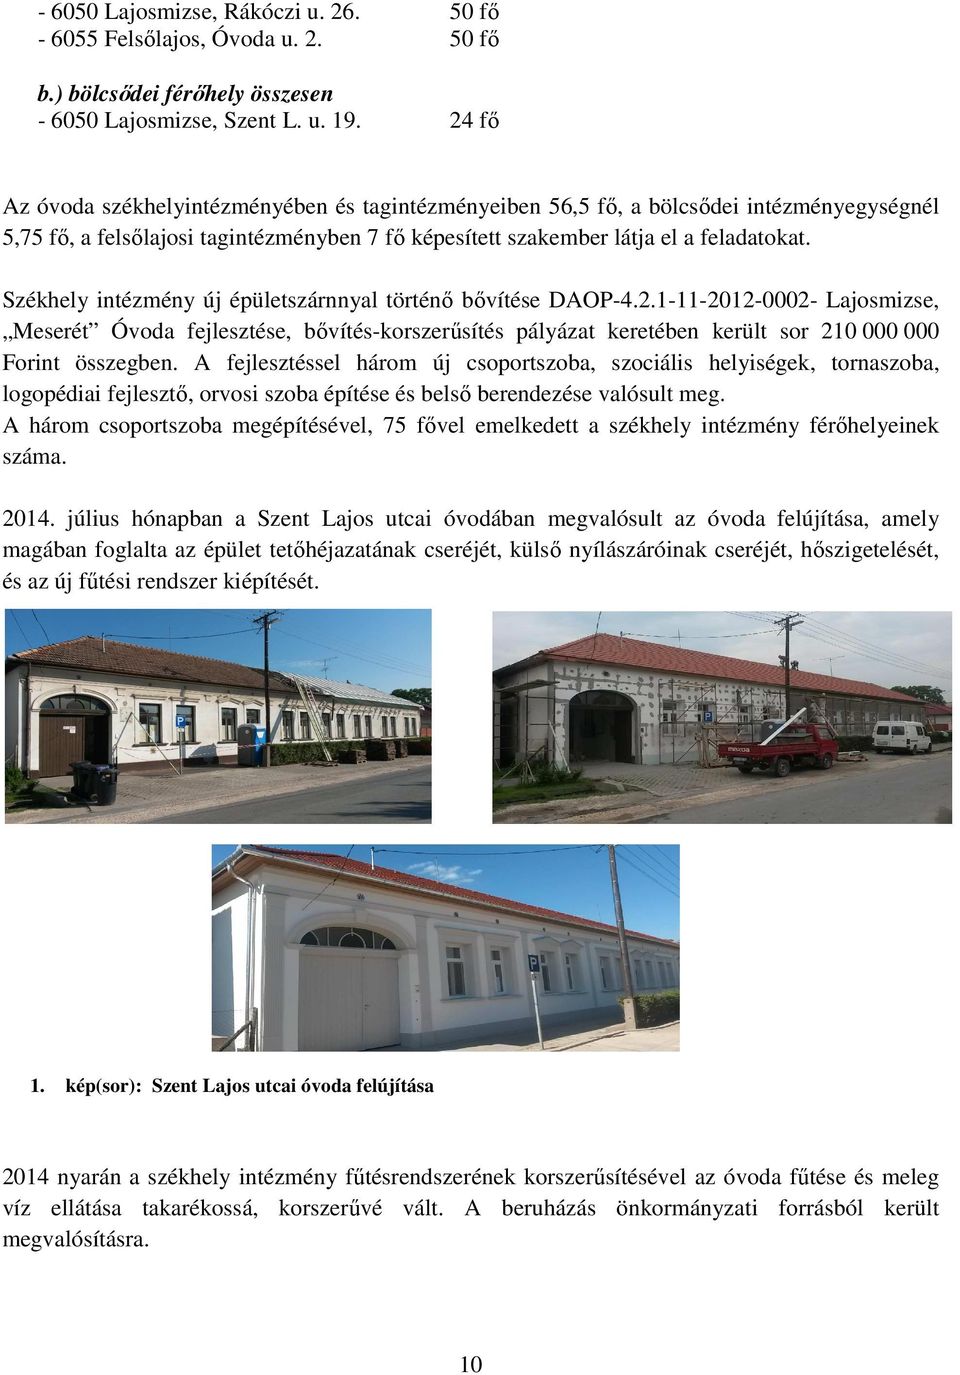 Székhely intézmény új épületszárnnyal történı bıvítése DAOP-4.2.1-11-2012-0002- Lajosmizse, Meserét Óvoda fejlesztése, bıvítés-korszerősítés pályázat keretében került sor 210 000 000 Forint összegben.